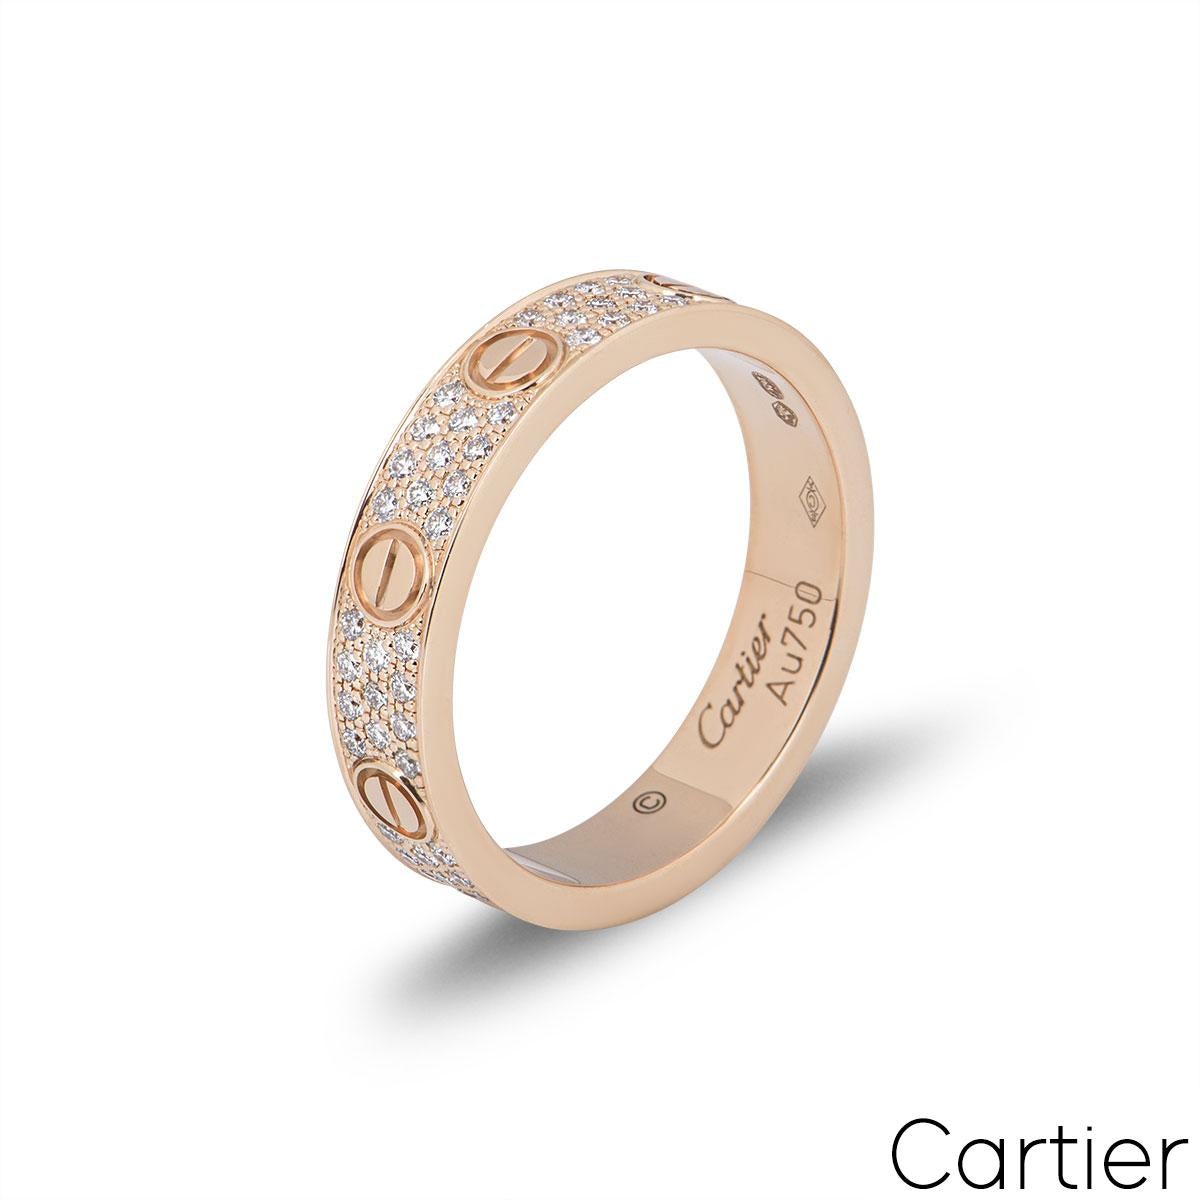 Ein Cartier-Diamantring aus 18 Karat Roségold aus der Collection'S Love. Der Ring besteht aus den ikonischen Schraubenmotiven an den Außenkanten, zwischen denen 88 runde Diamanten im Brillantschliff von insgesamt 0,31 Karat gefasst sind. Der Ring